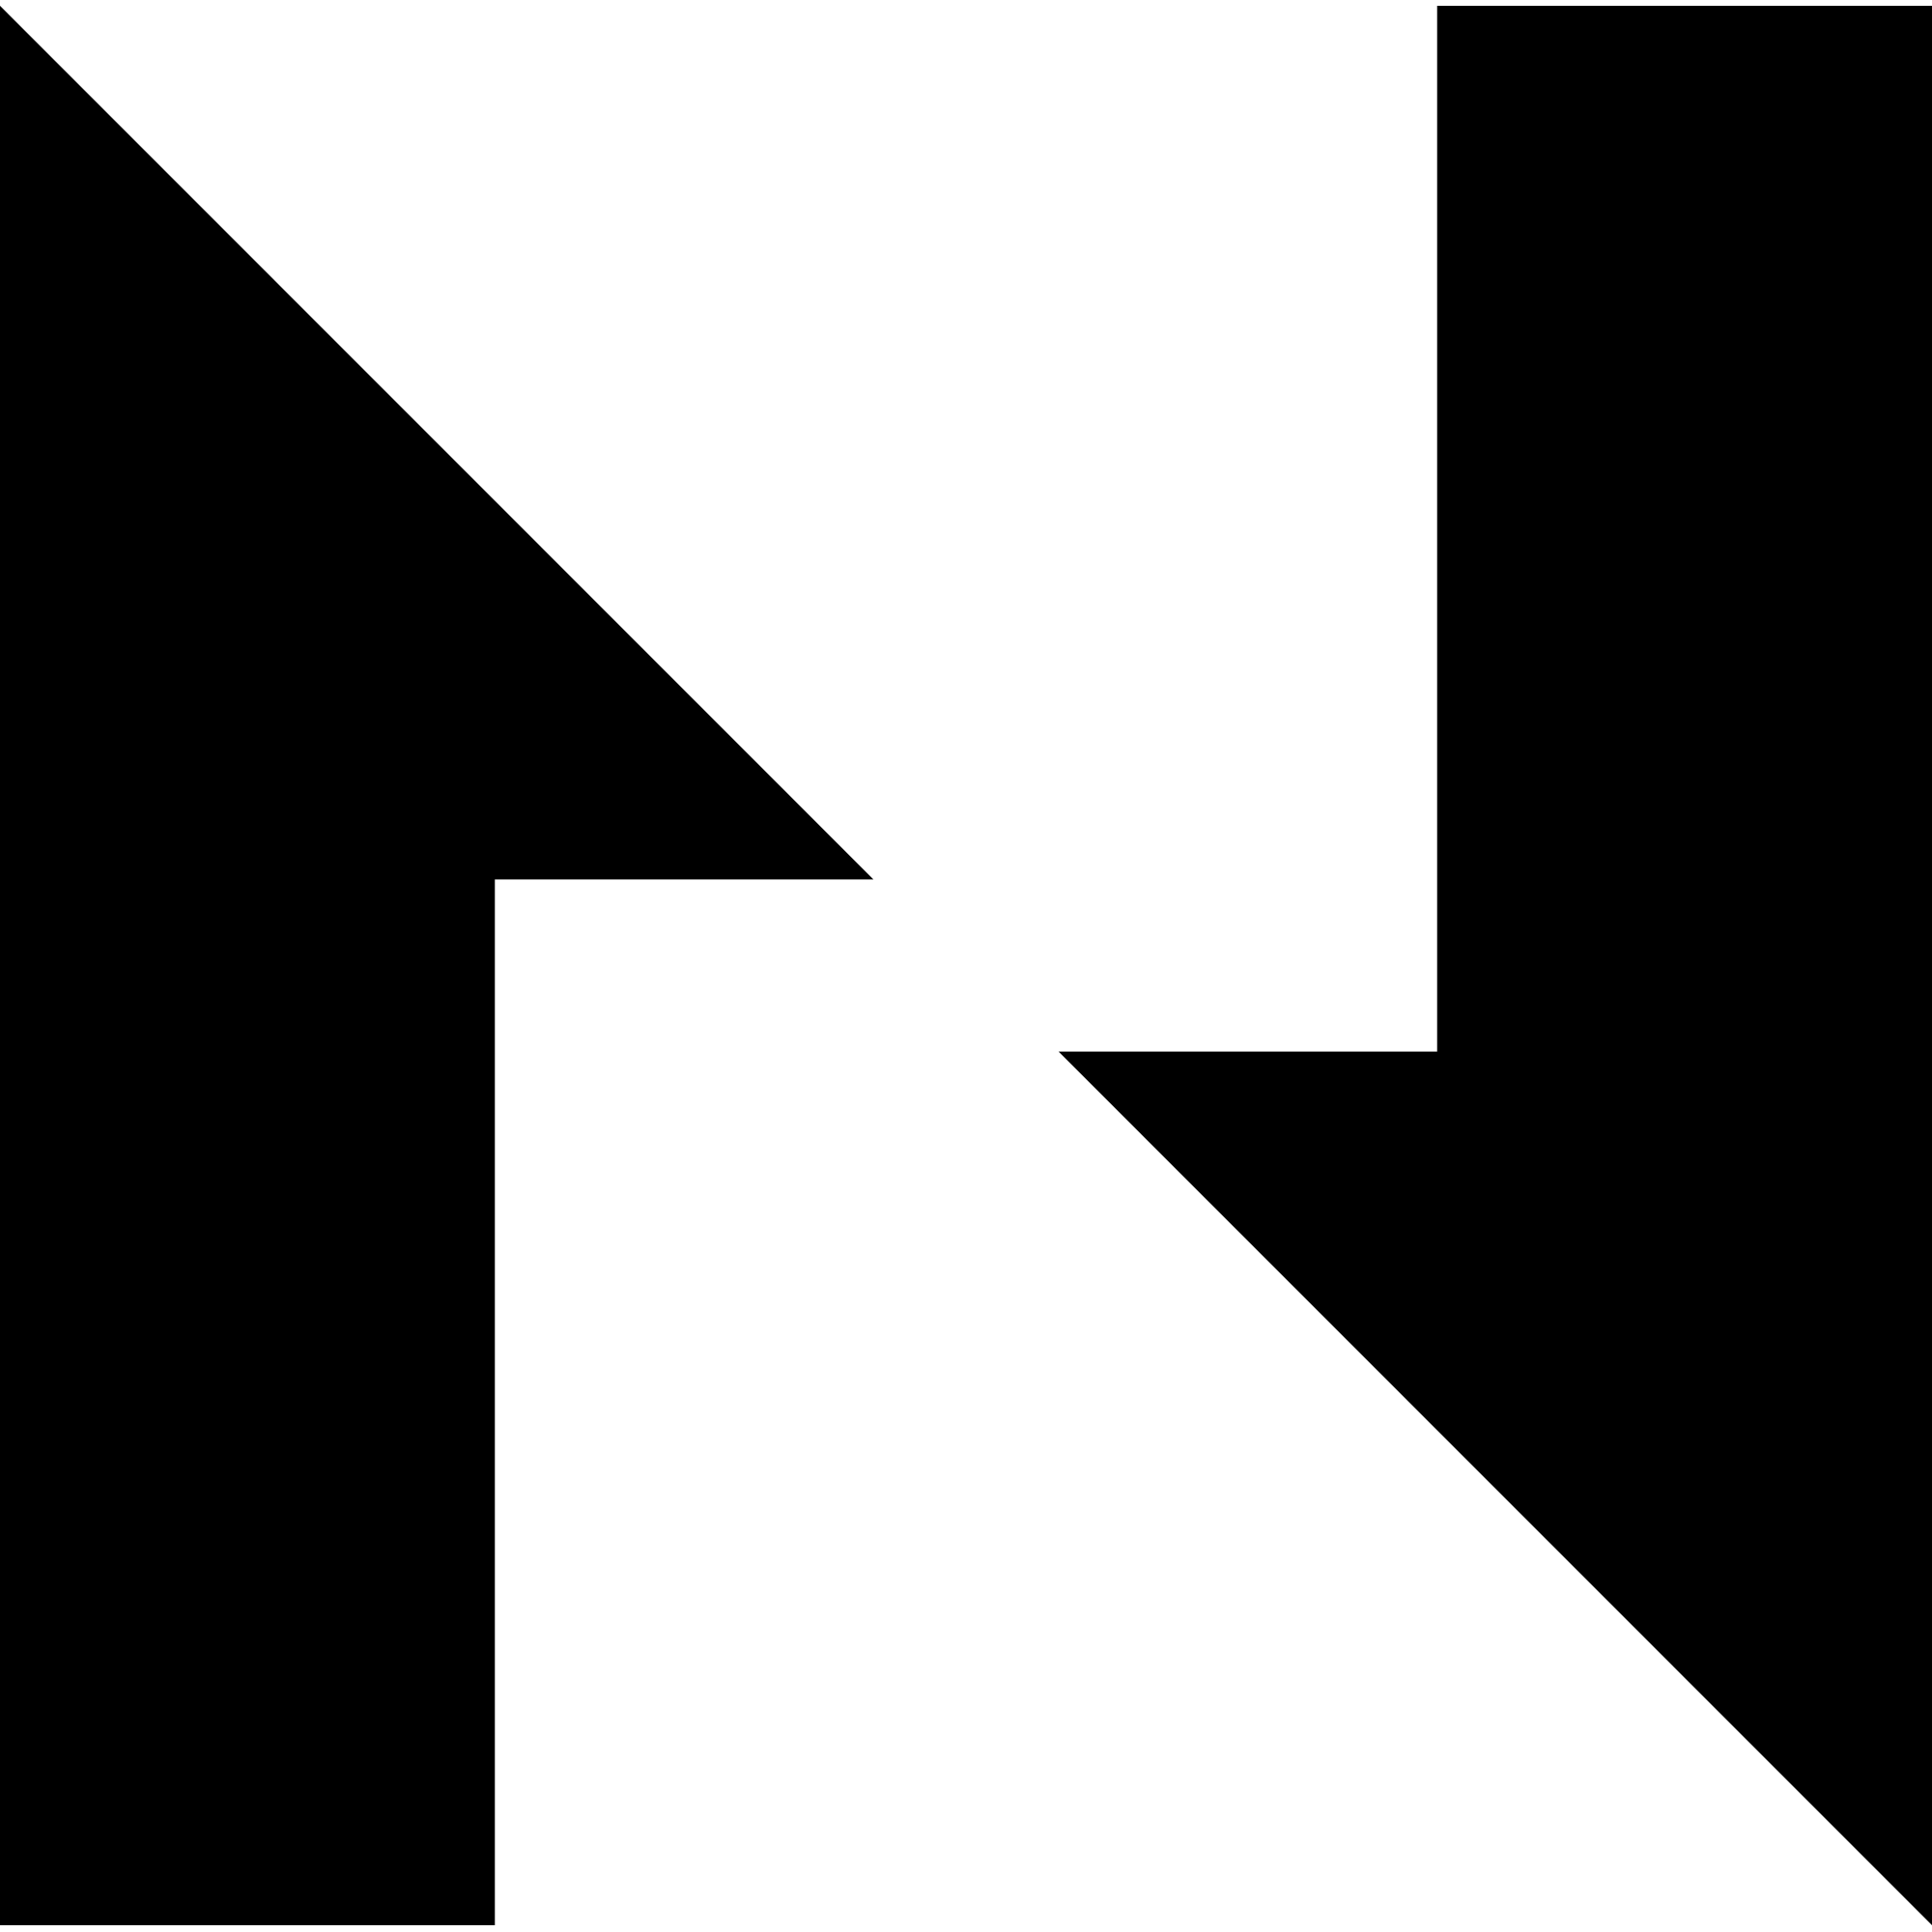 Nervos Network CKB logo .PNG transparent file download